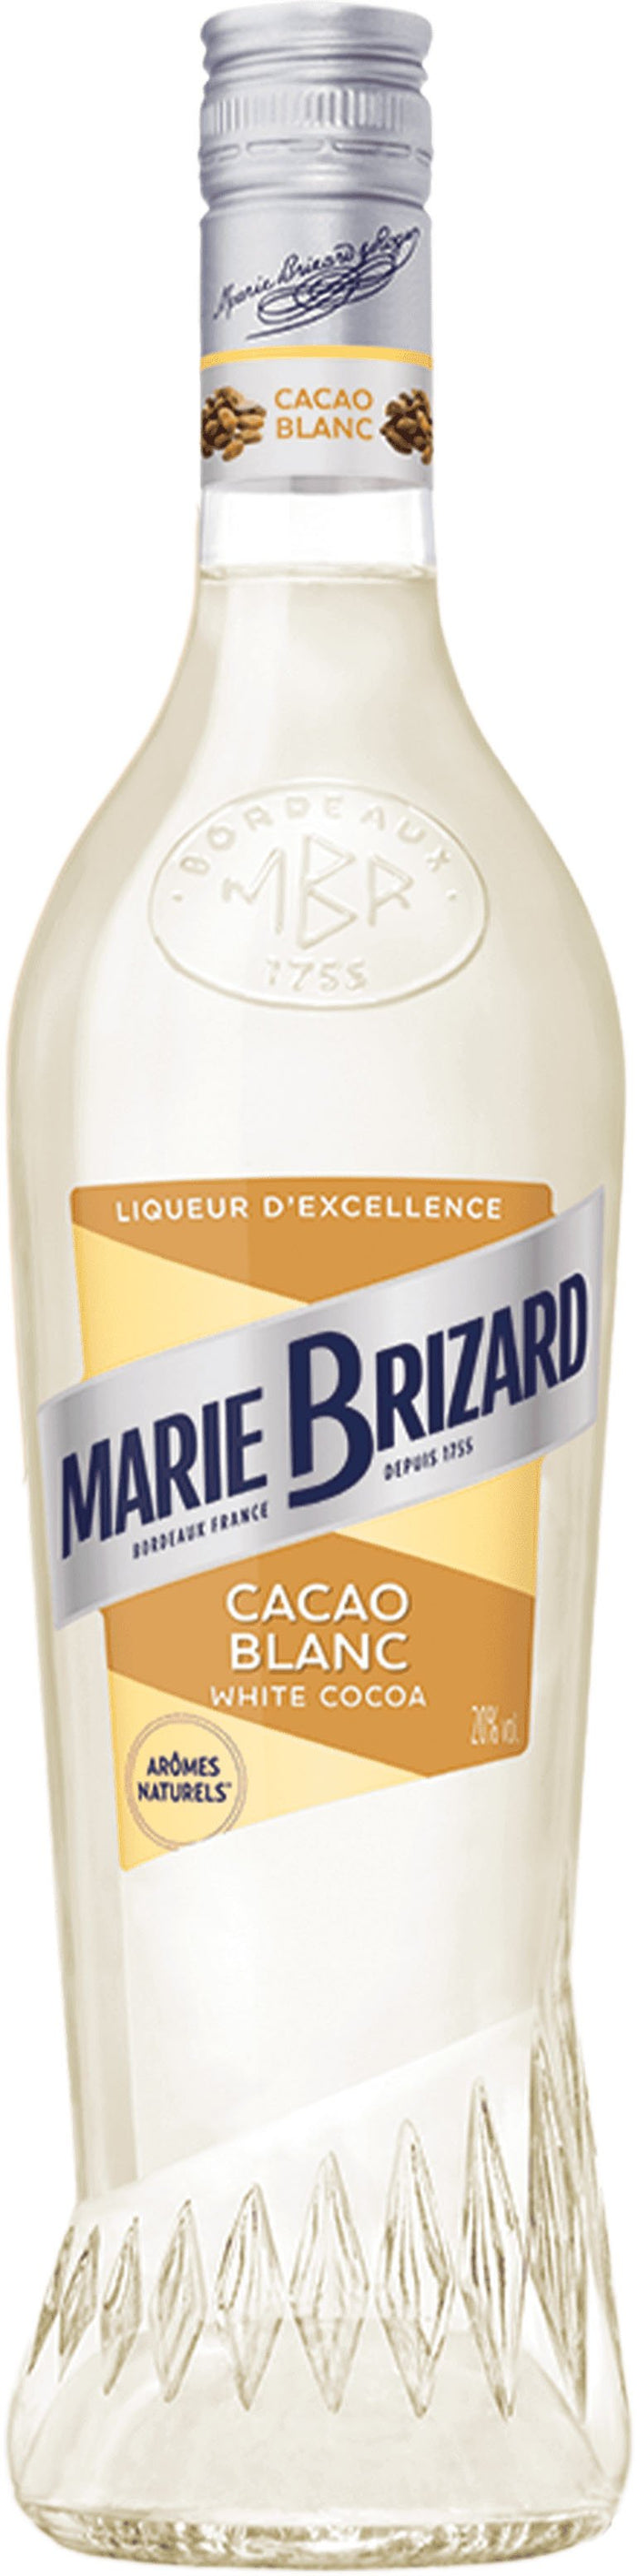 Marie Brizard White Chocolate Liqueur